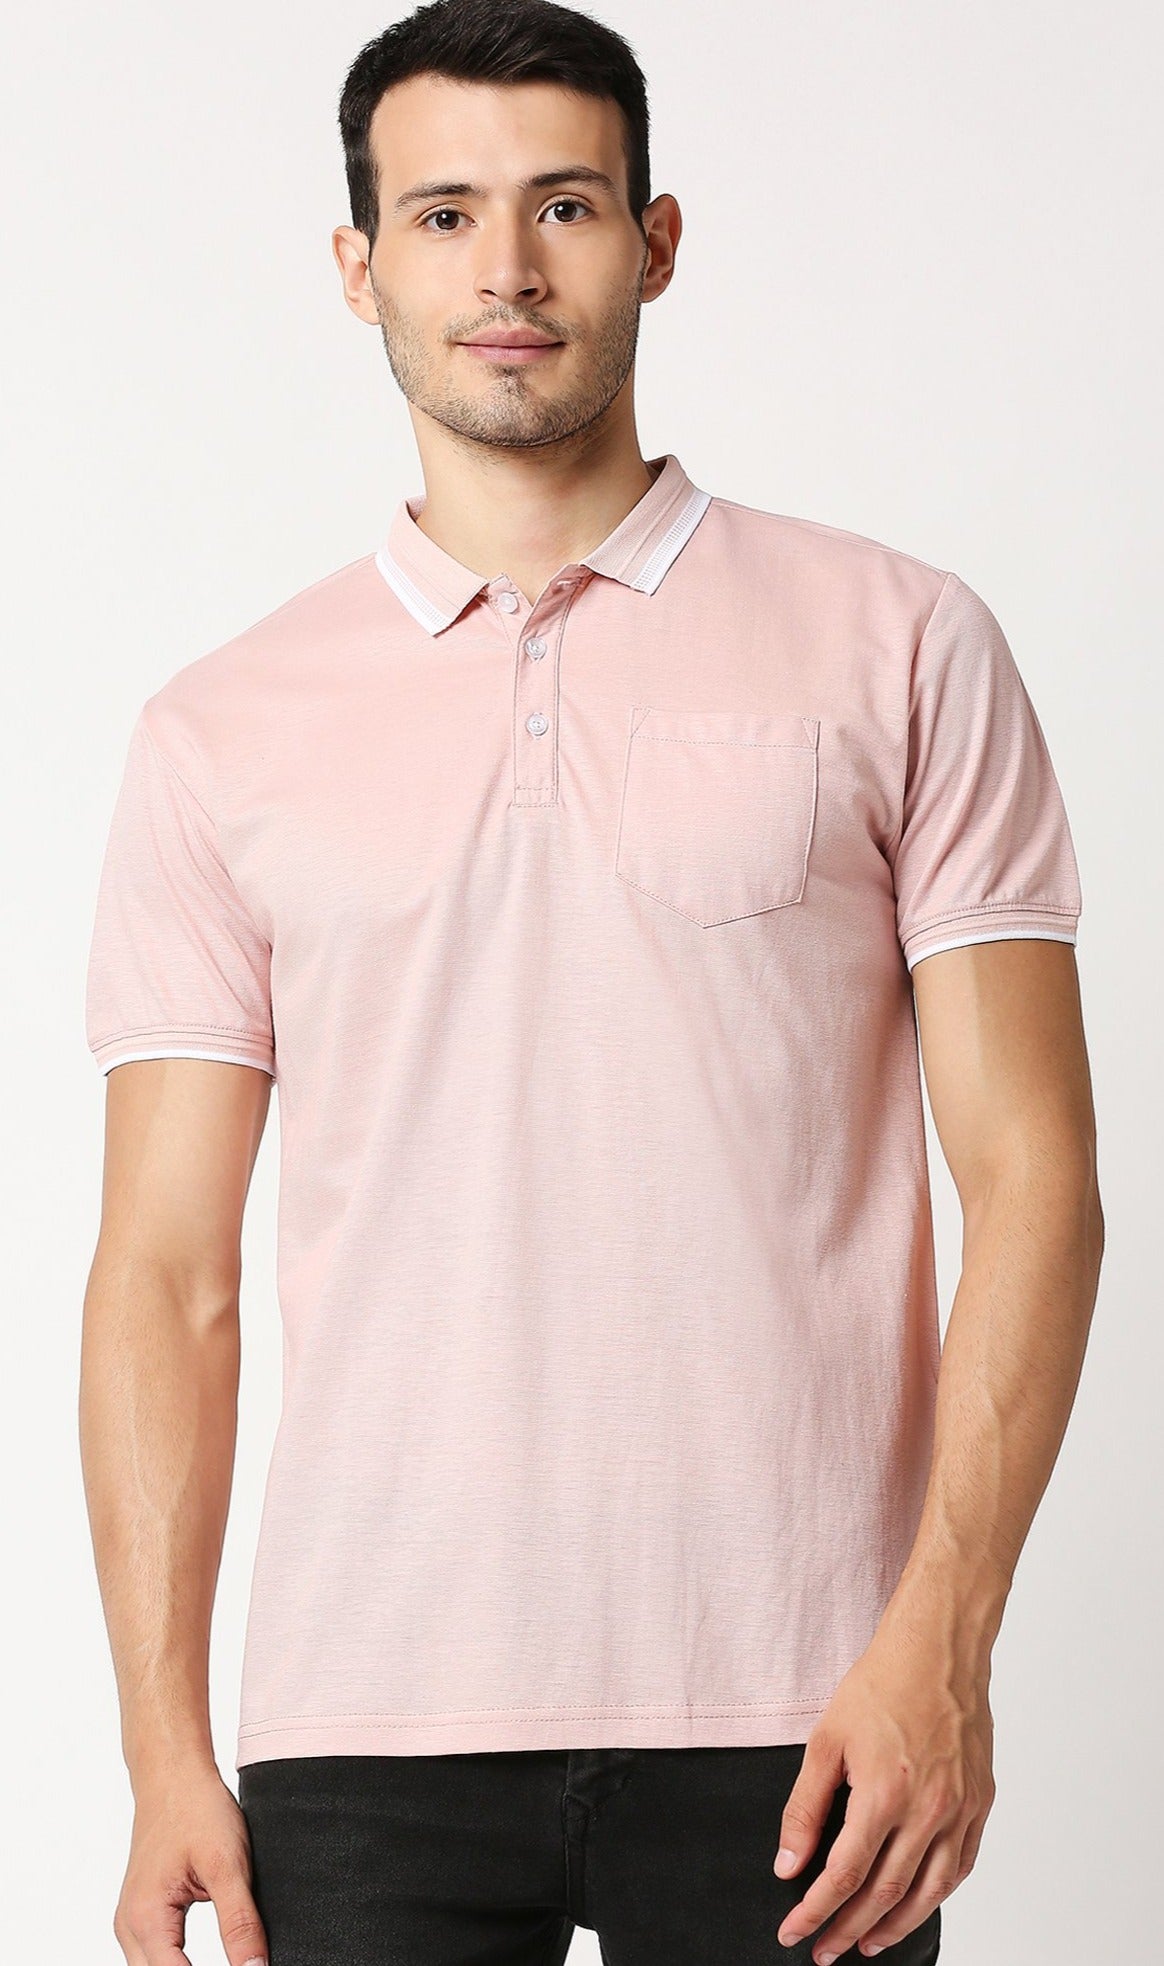 Fostino Zakat Light Pink Polo T-Shirt - Fostino - T-Shirts